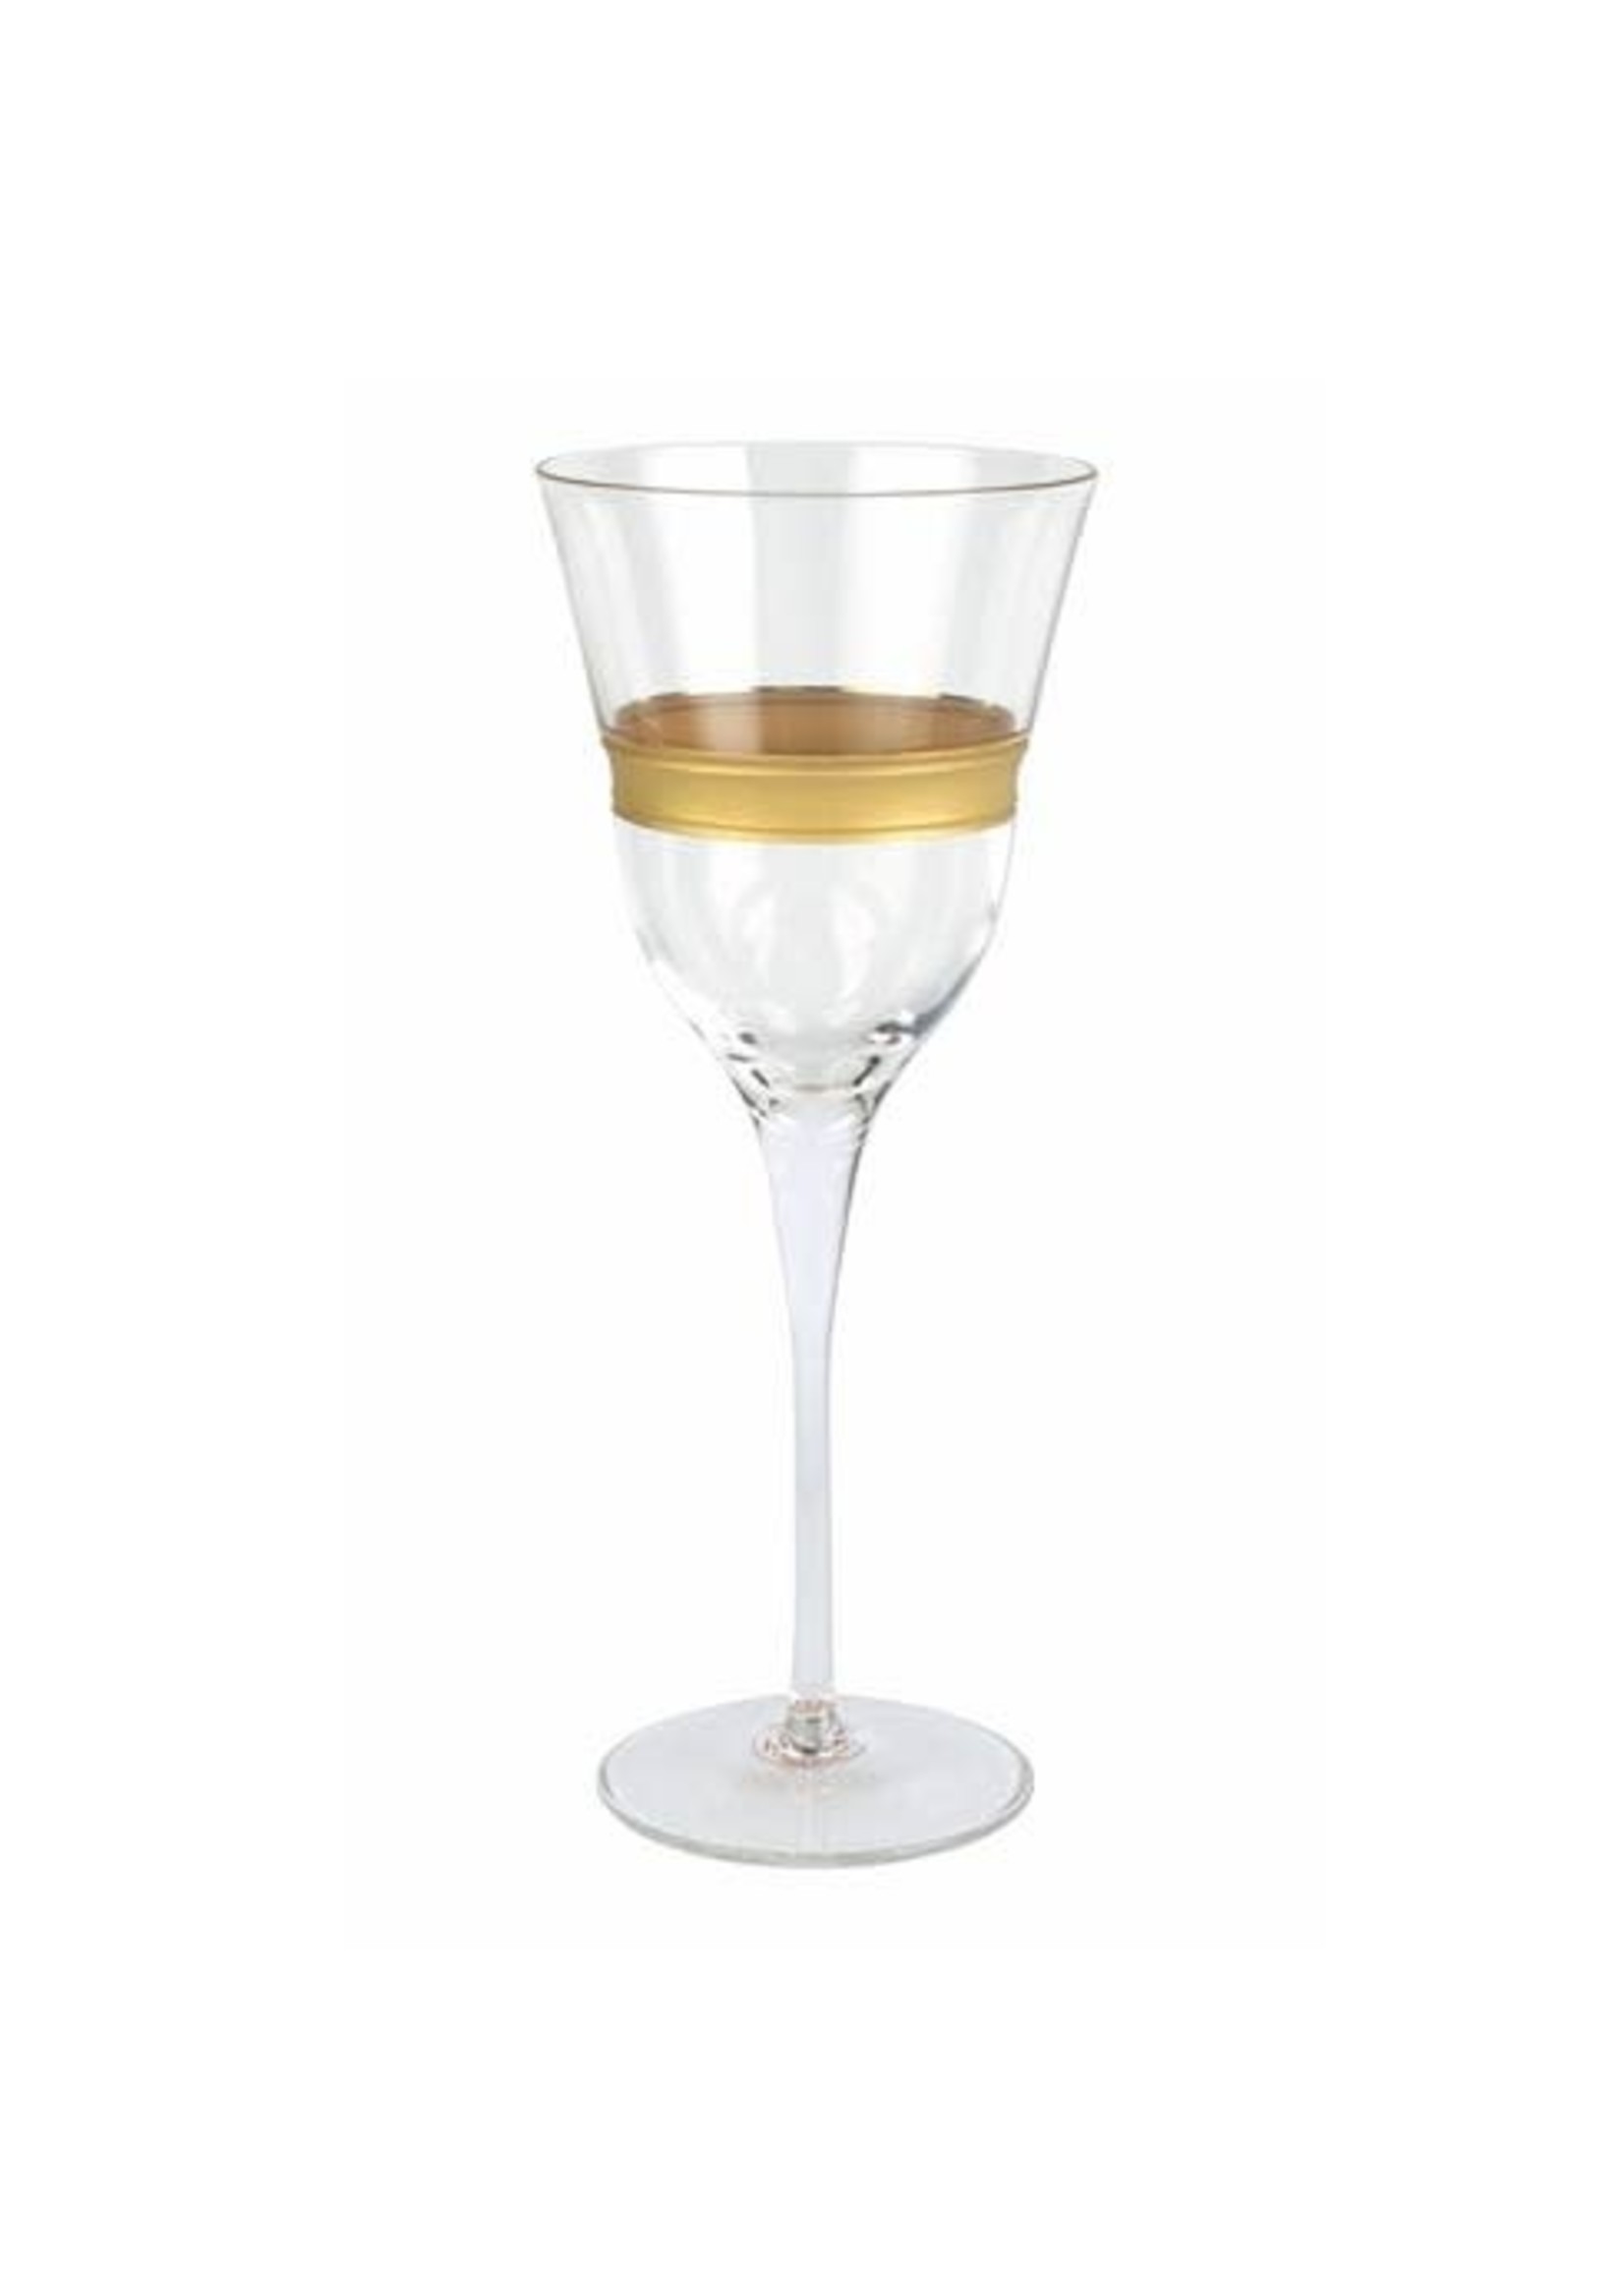 VIETRI Raffaello Banded Wine Glass